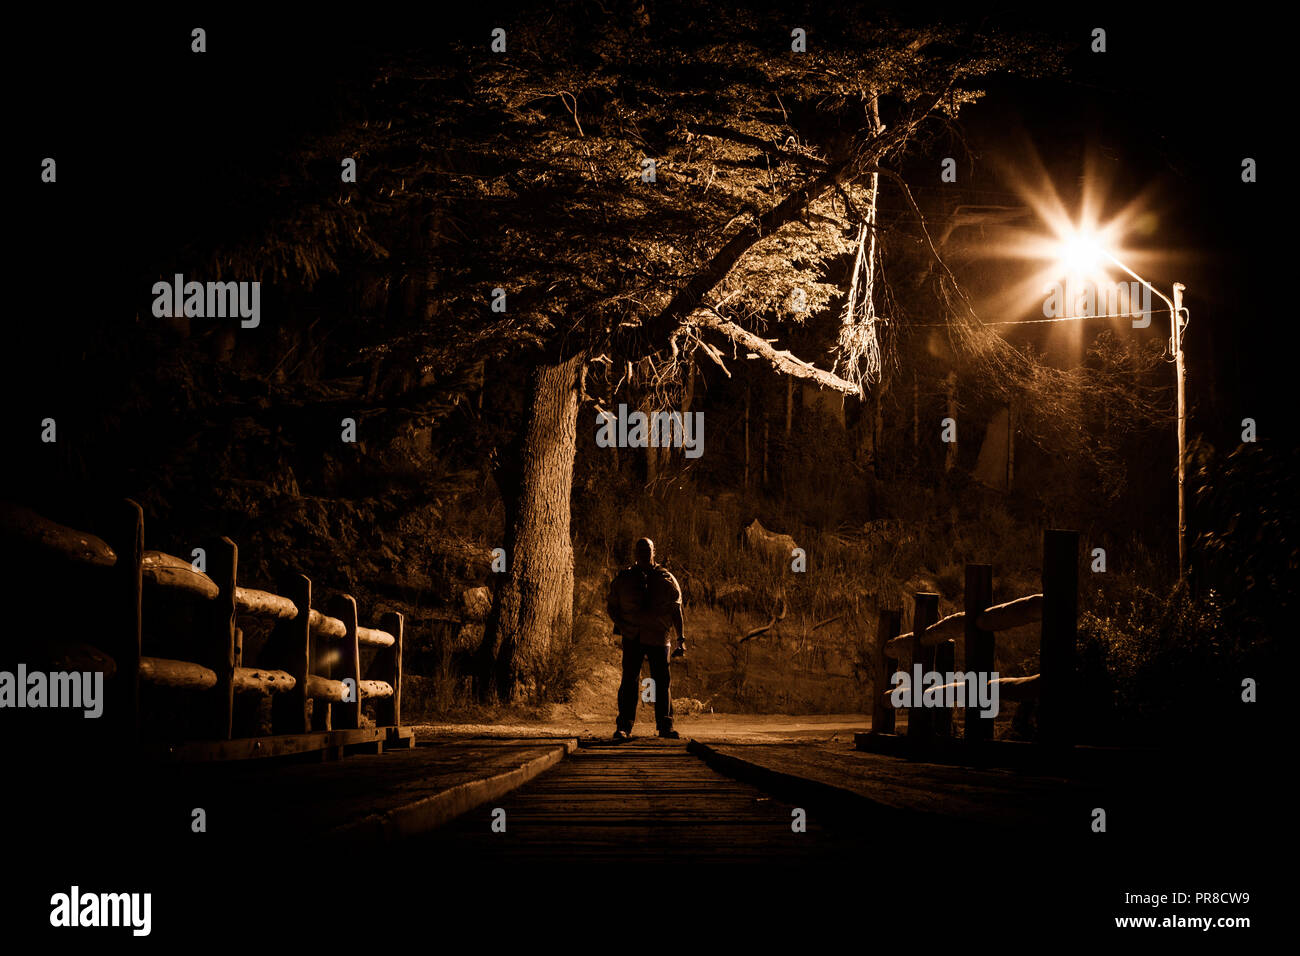 Night Stalker Konzept. Mann stand auf Holz Brücke unter Straße Licht in dunkler Nacht Stockfoto